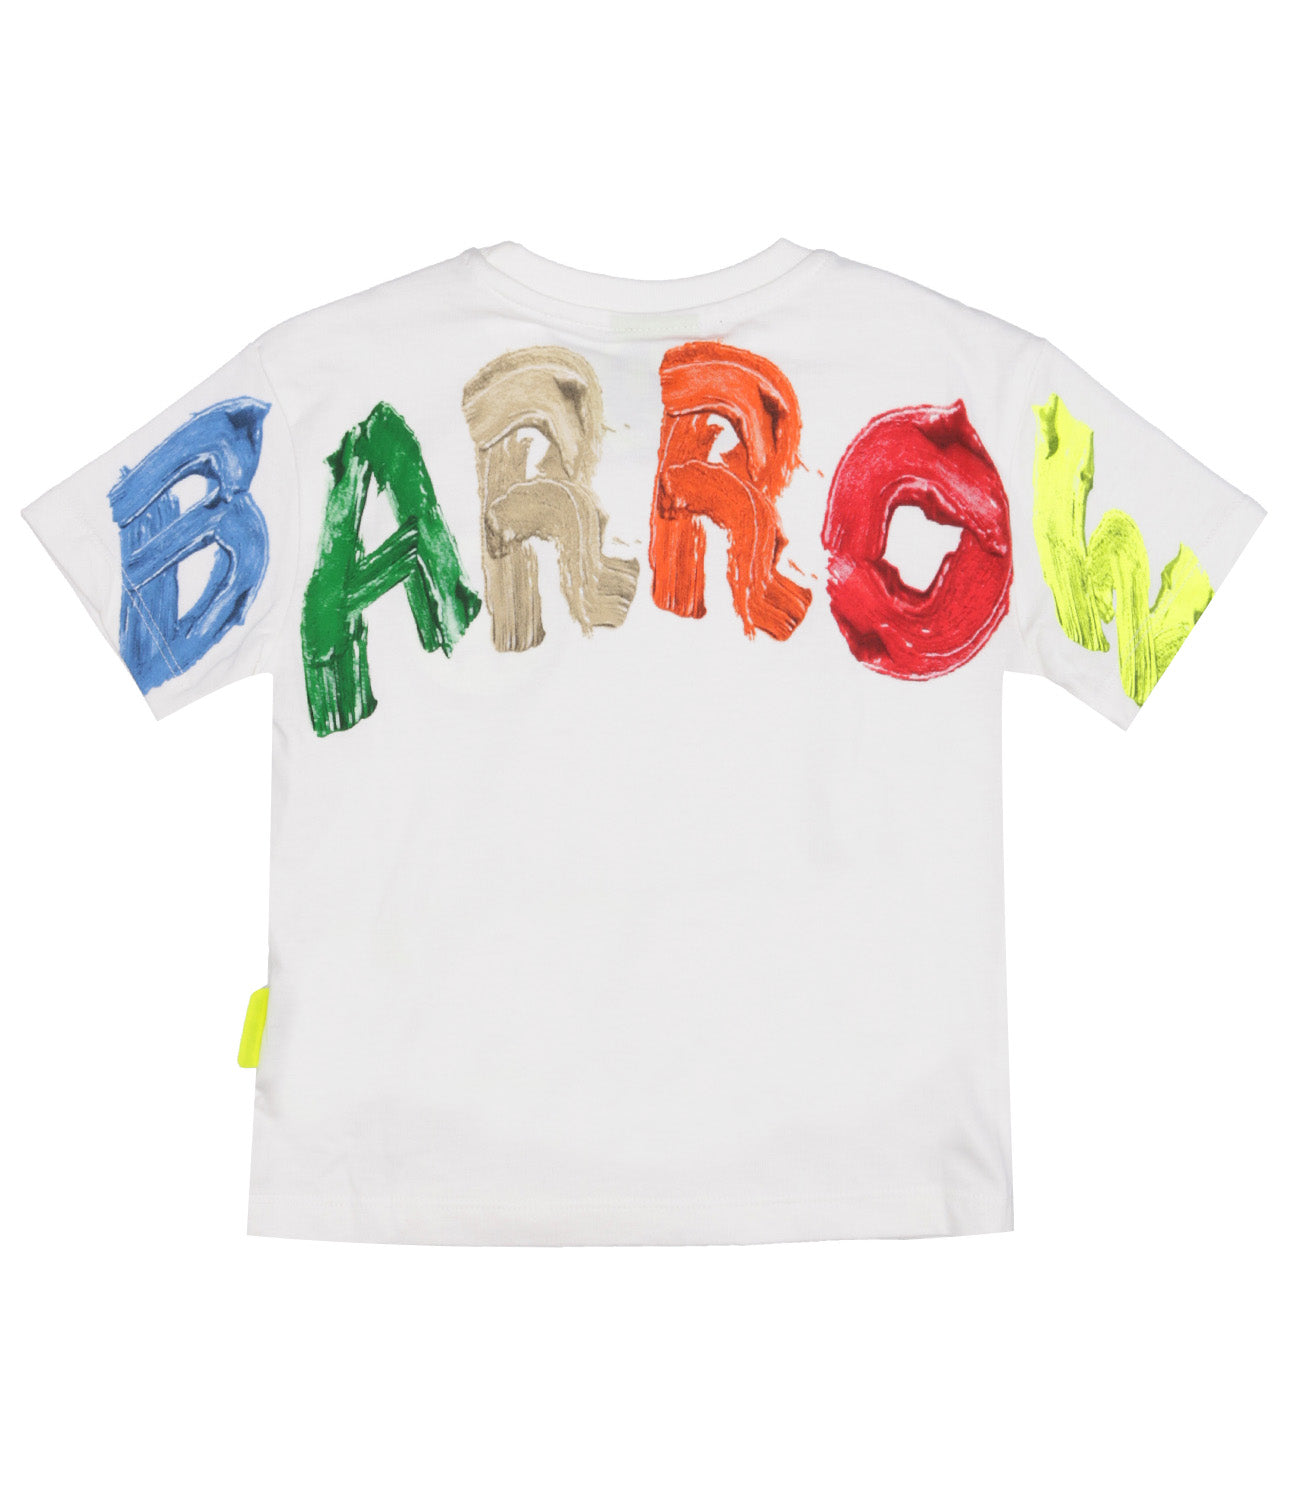 Barrow Kids | T-Shirt Bianca